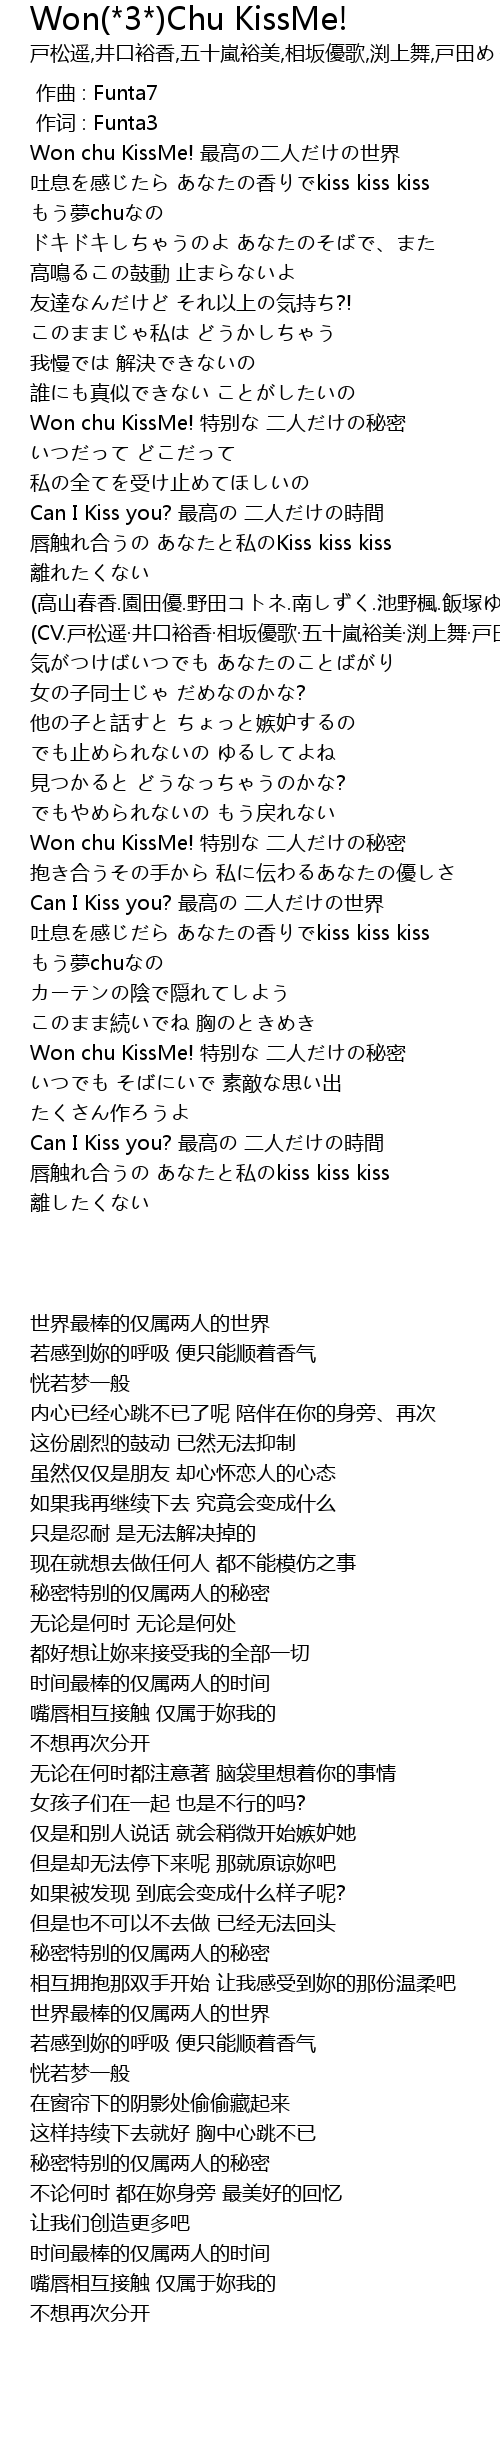 Won 3 Chu Kissme Lyrics Follow Lyrics